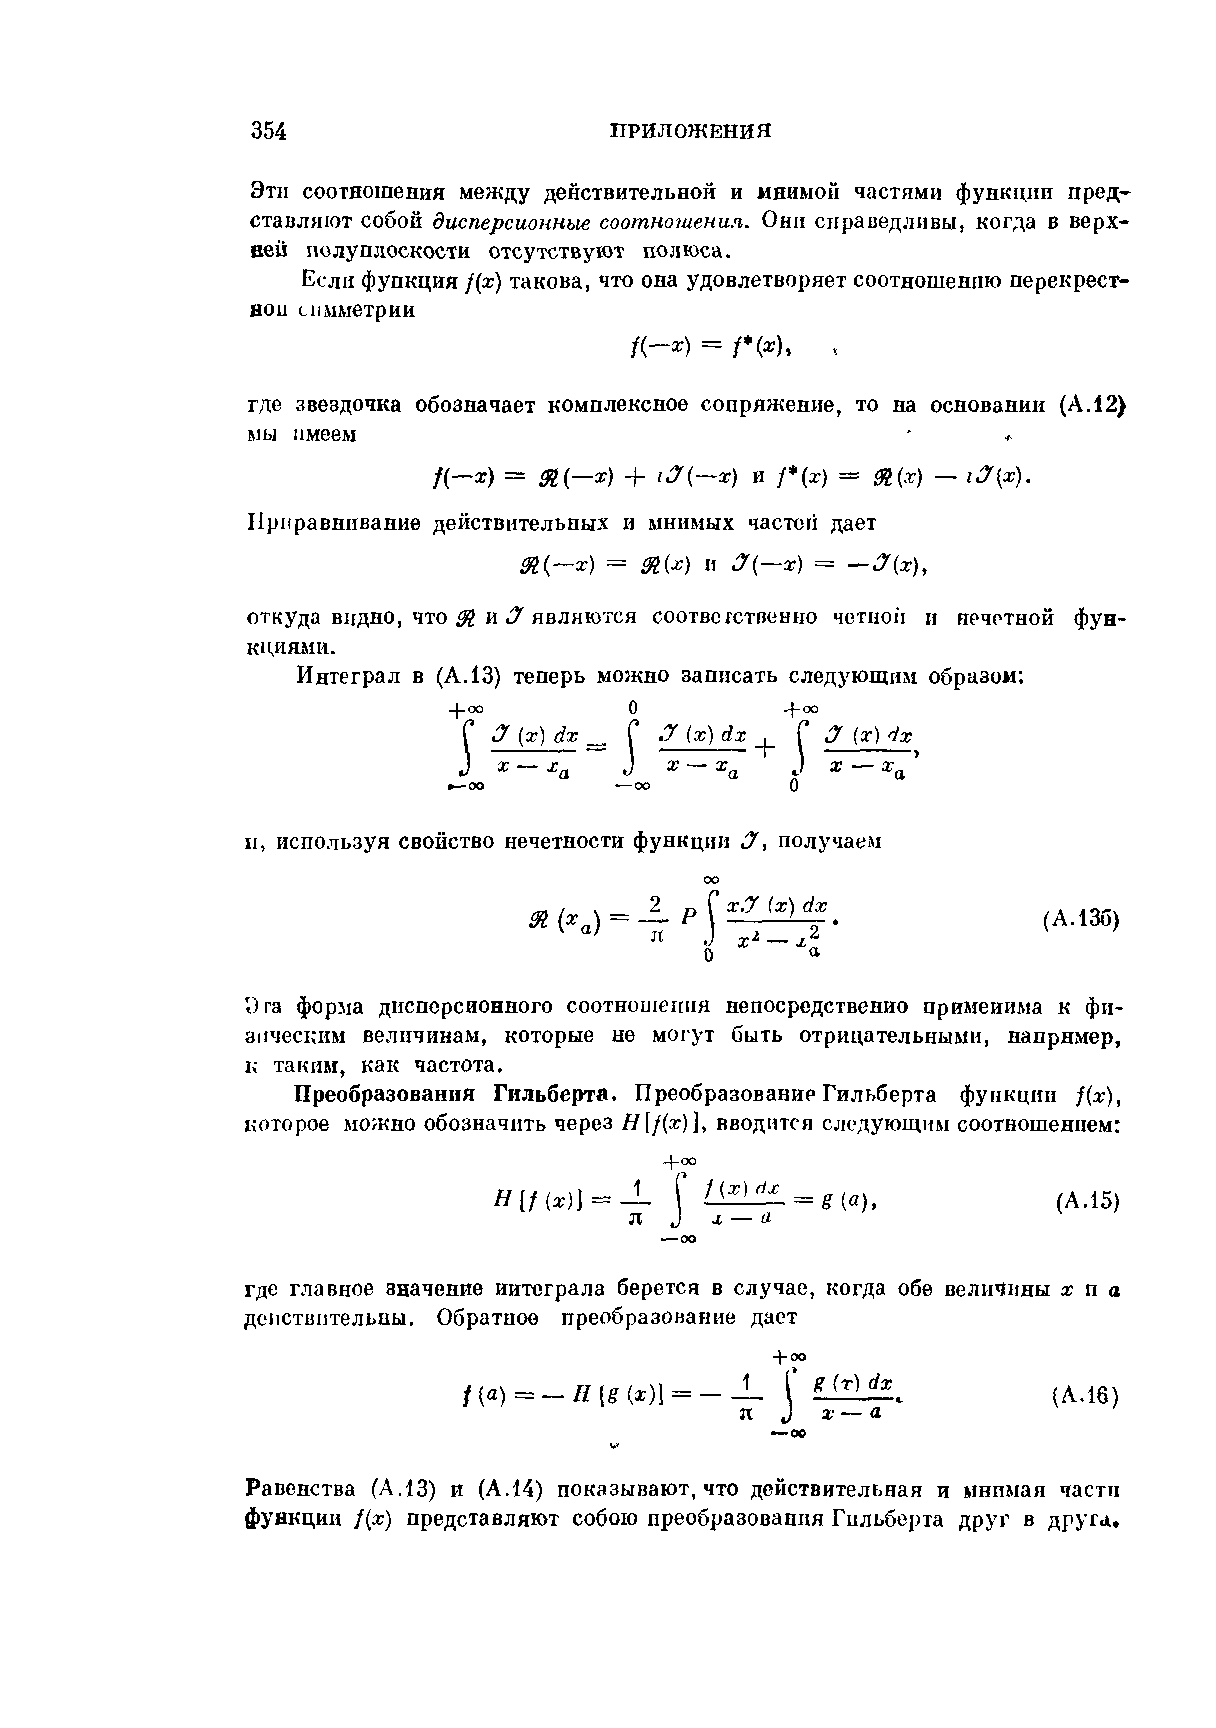 Равенства (А,13) и (А.14) показывают, что действительная и мнимая части функции х) представляют собою преобразования Гильберта друг в друга.
